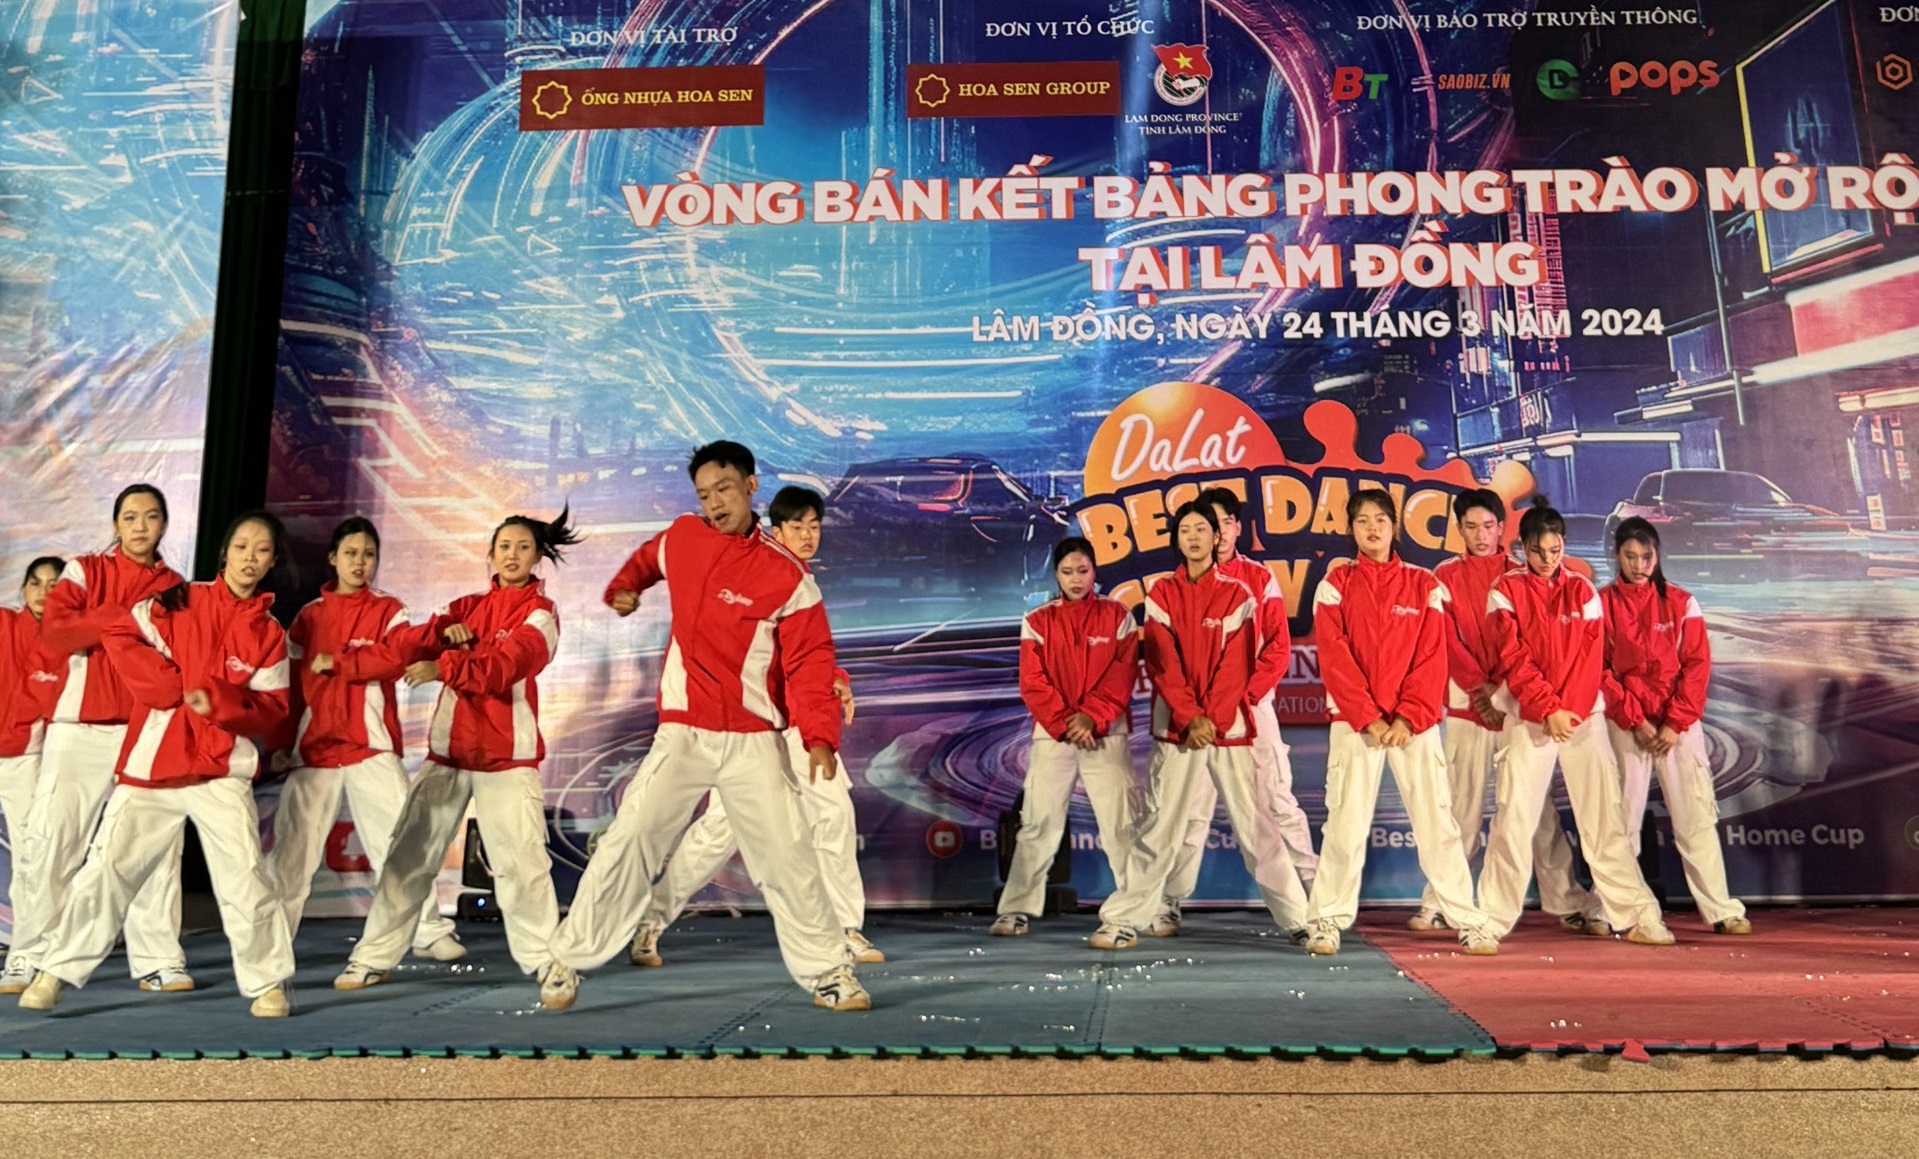 Lộ diện 14 nhóm nhảy lọt vào chung kết Dalat Best Dance Crew 2024